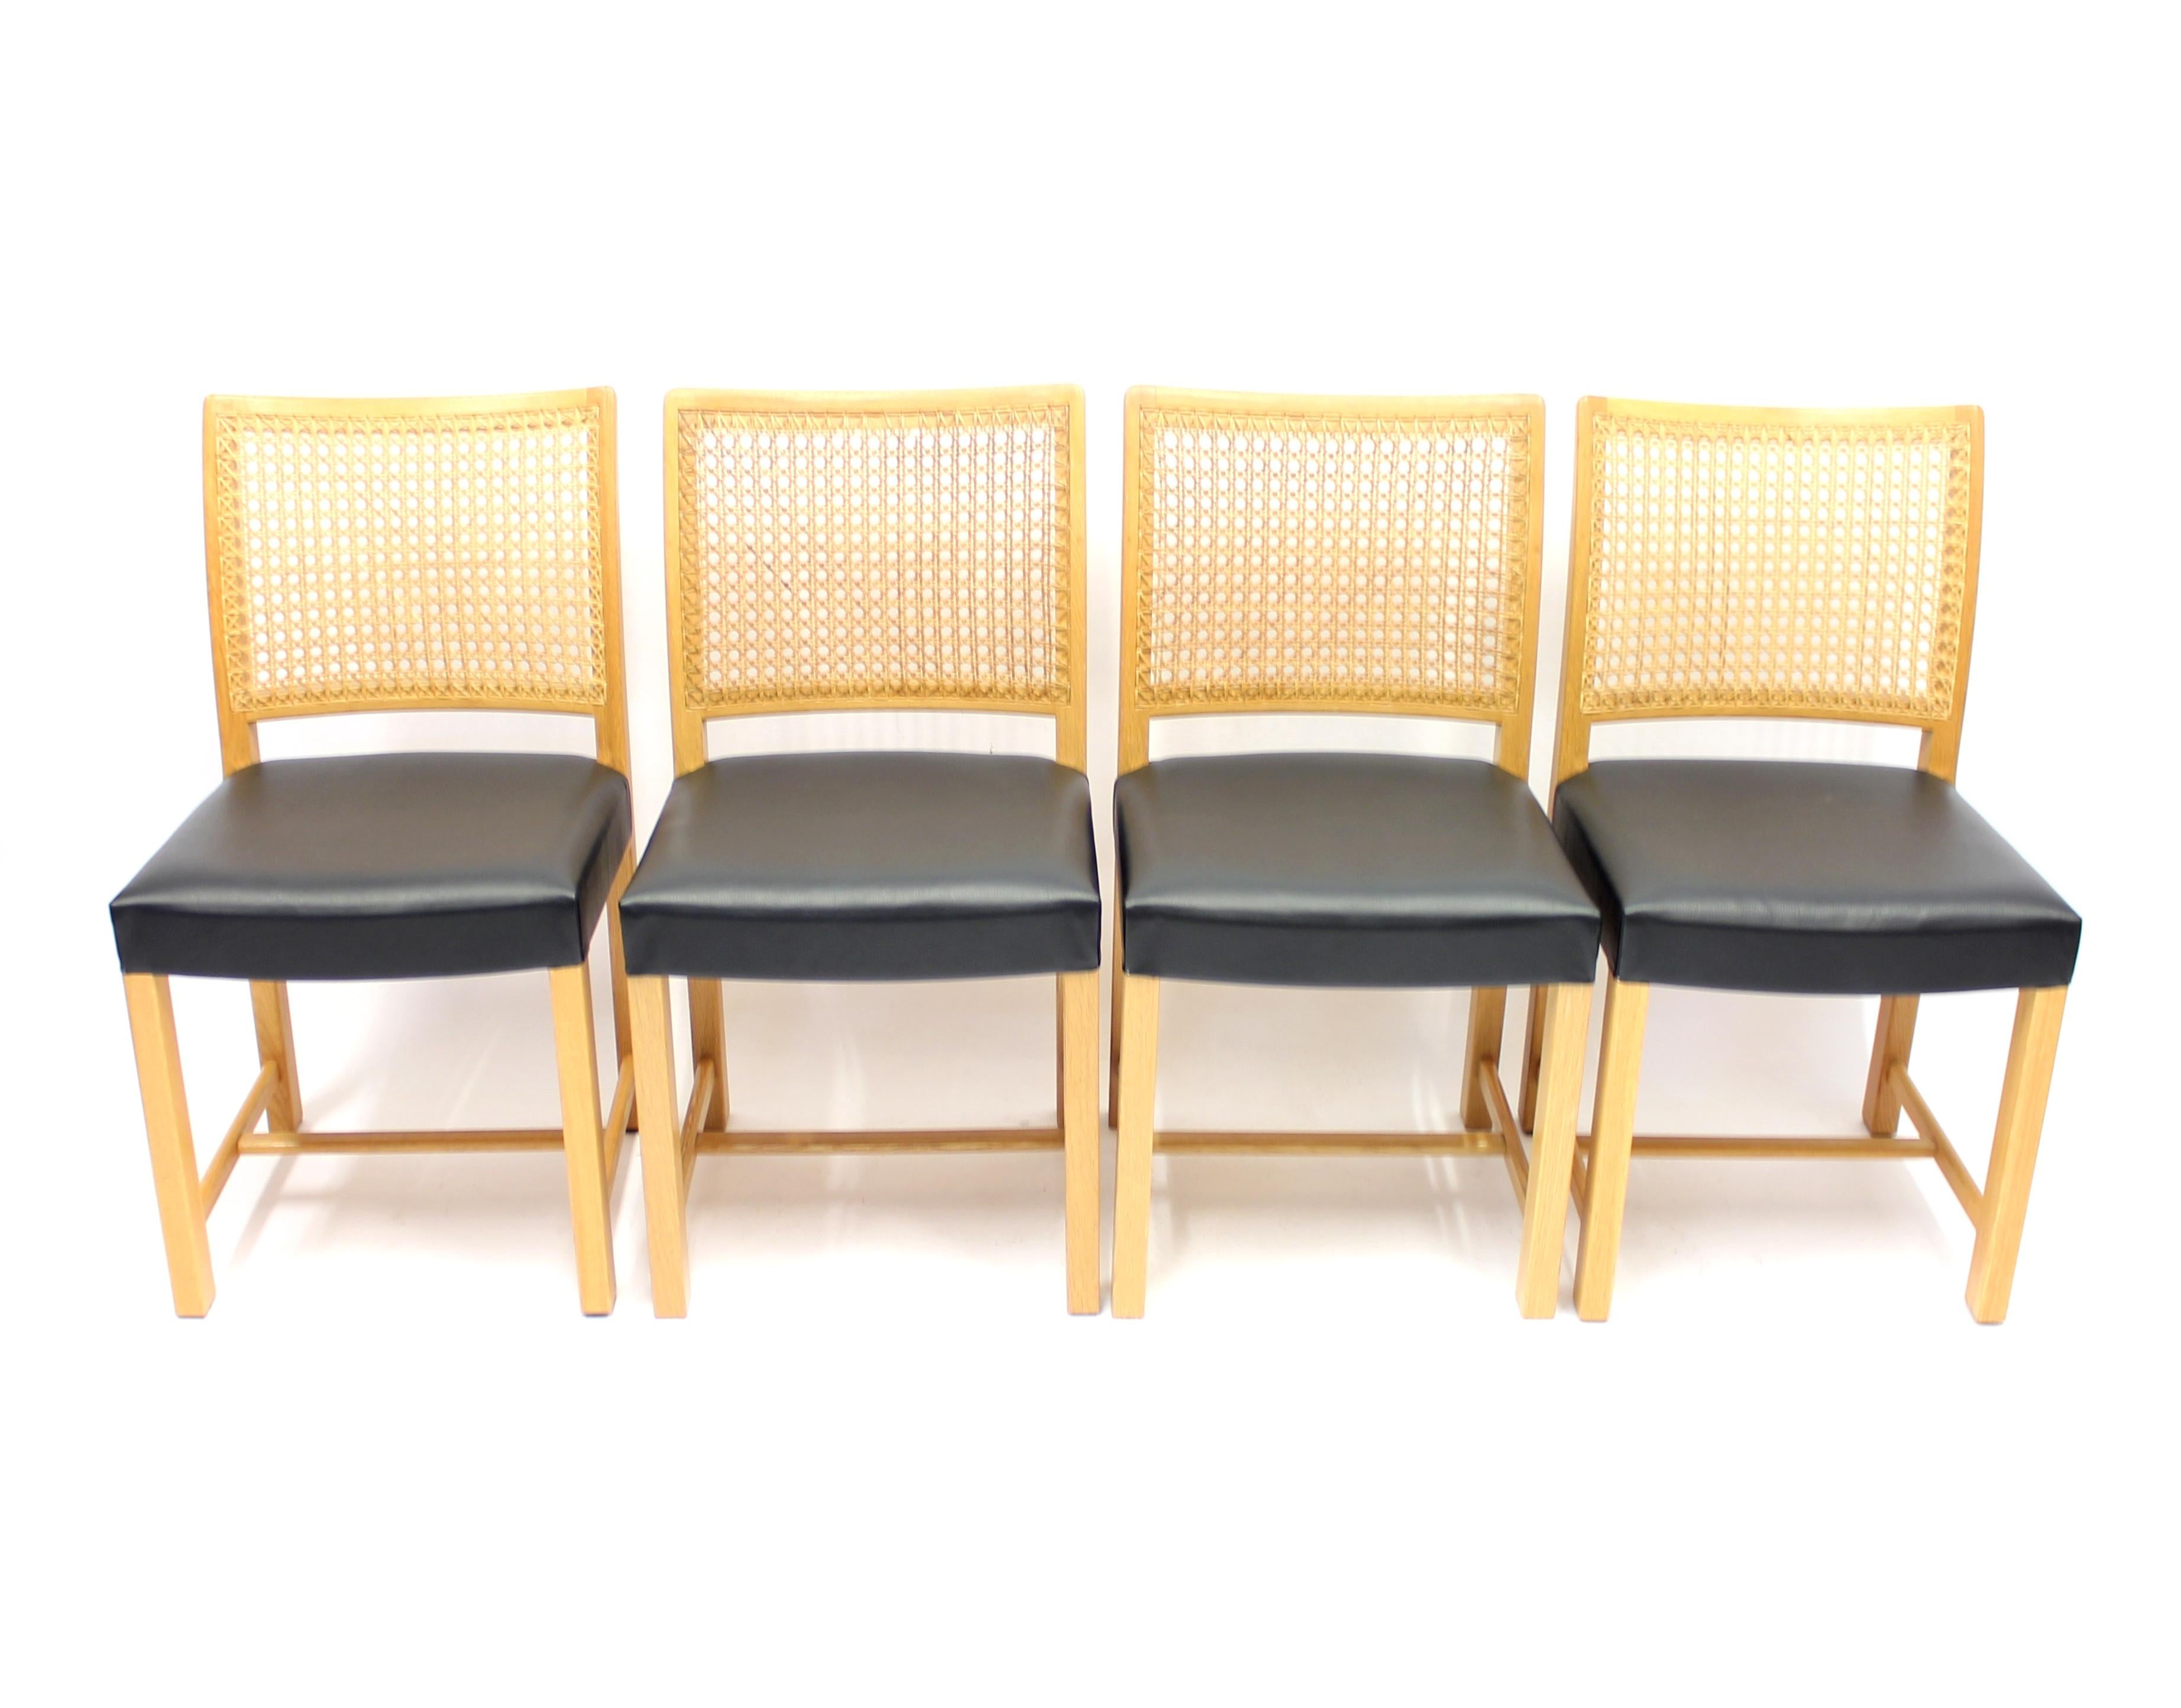 Satz von 4 Esszimmerstühlen, entworfen von Carl Gustaf Hjort af Ornäs für Mikko Nupponen in den 1950er Jahren. Rahmen und Beine aus massiver Eiche, Rückenlehne aus Rohr und neue schwarze Lederpolsterung auf den Sitzen.